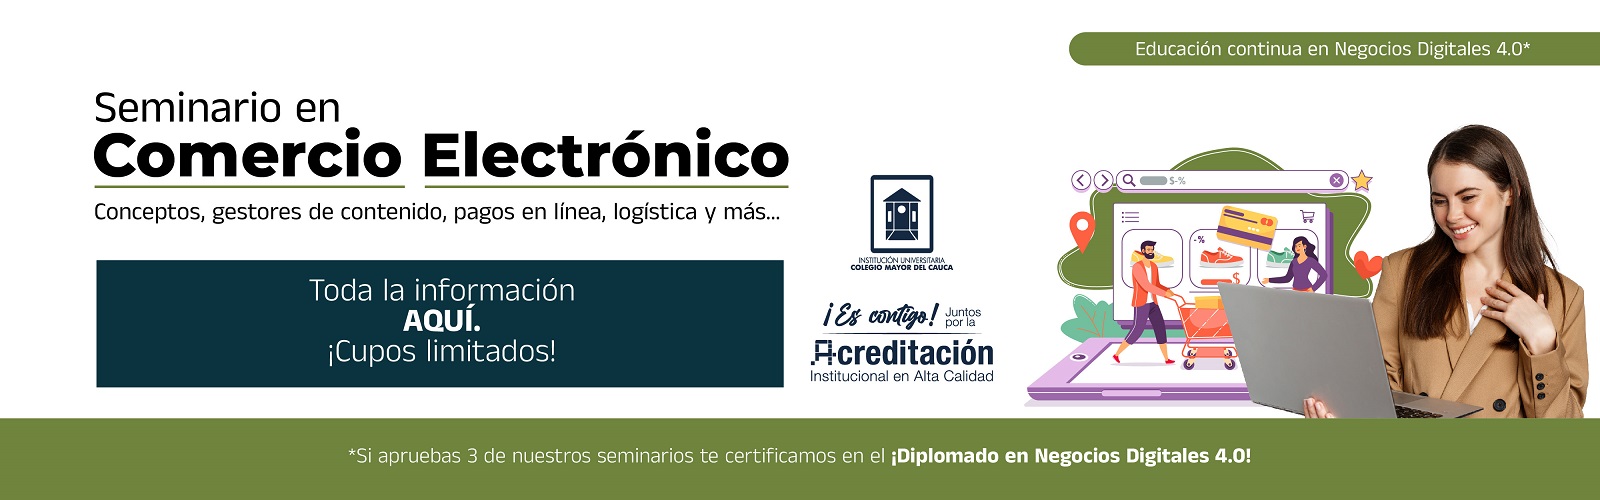 Banner_Seminario_Comercio_Electronico